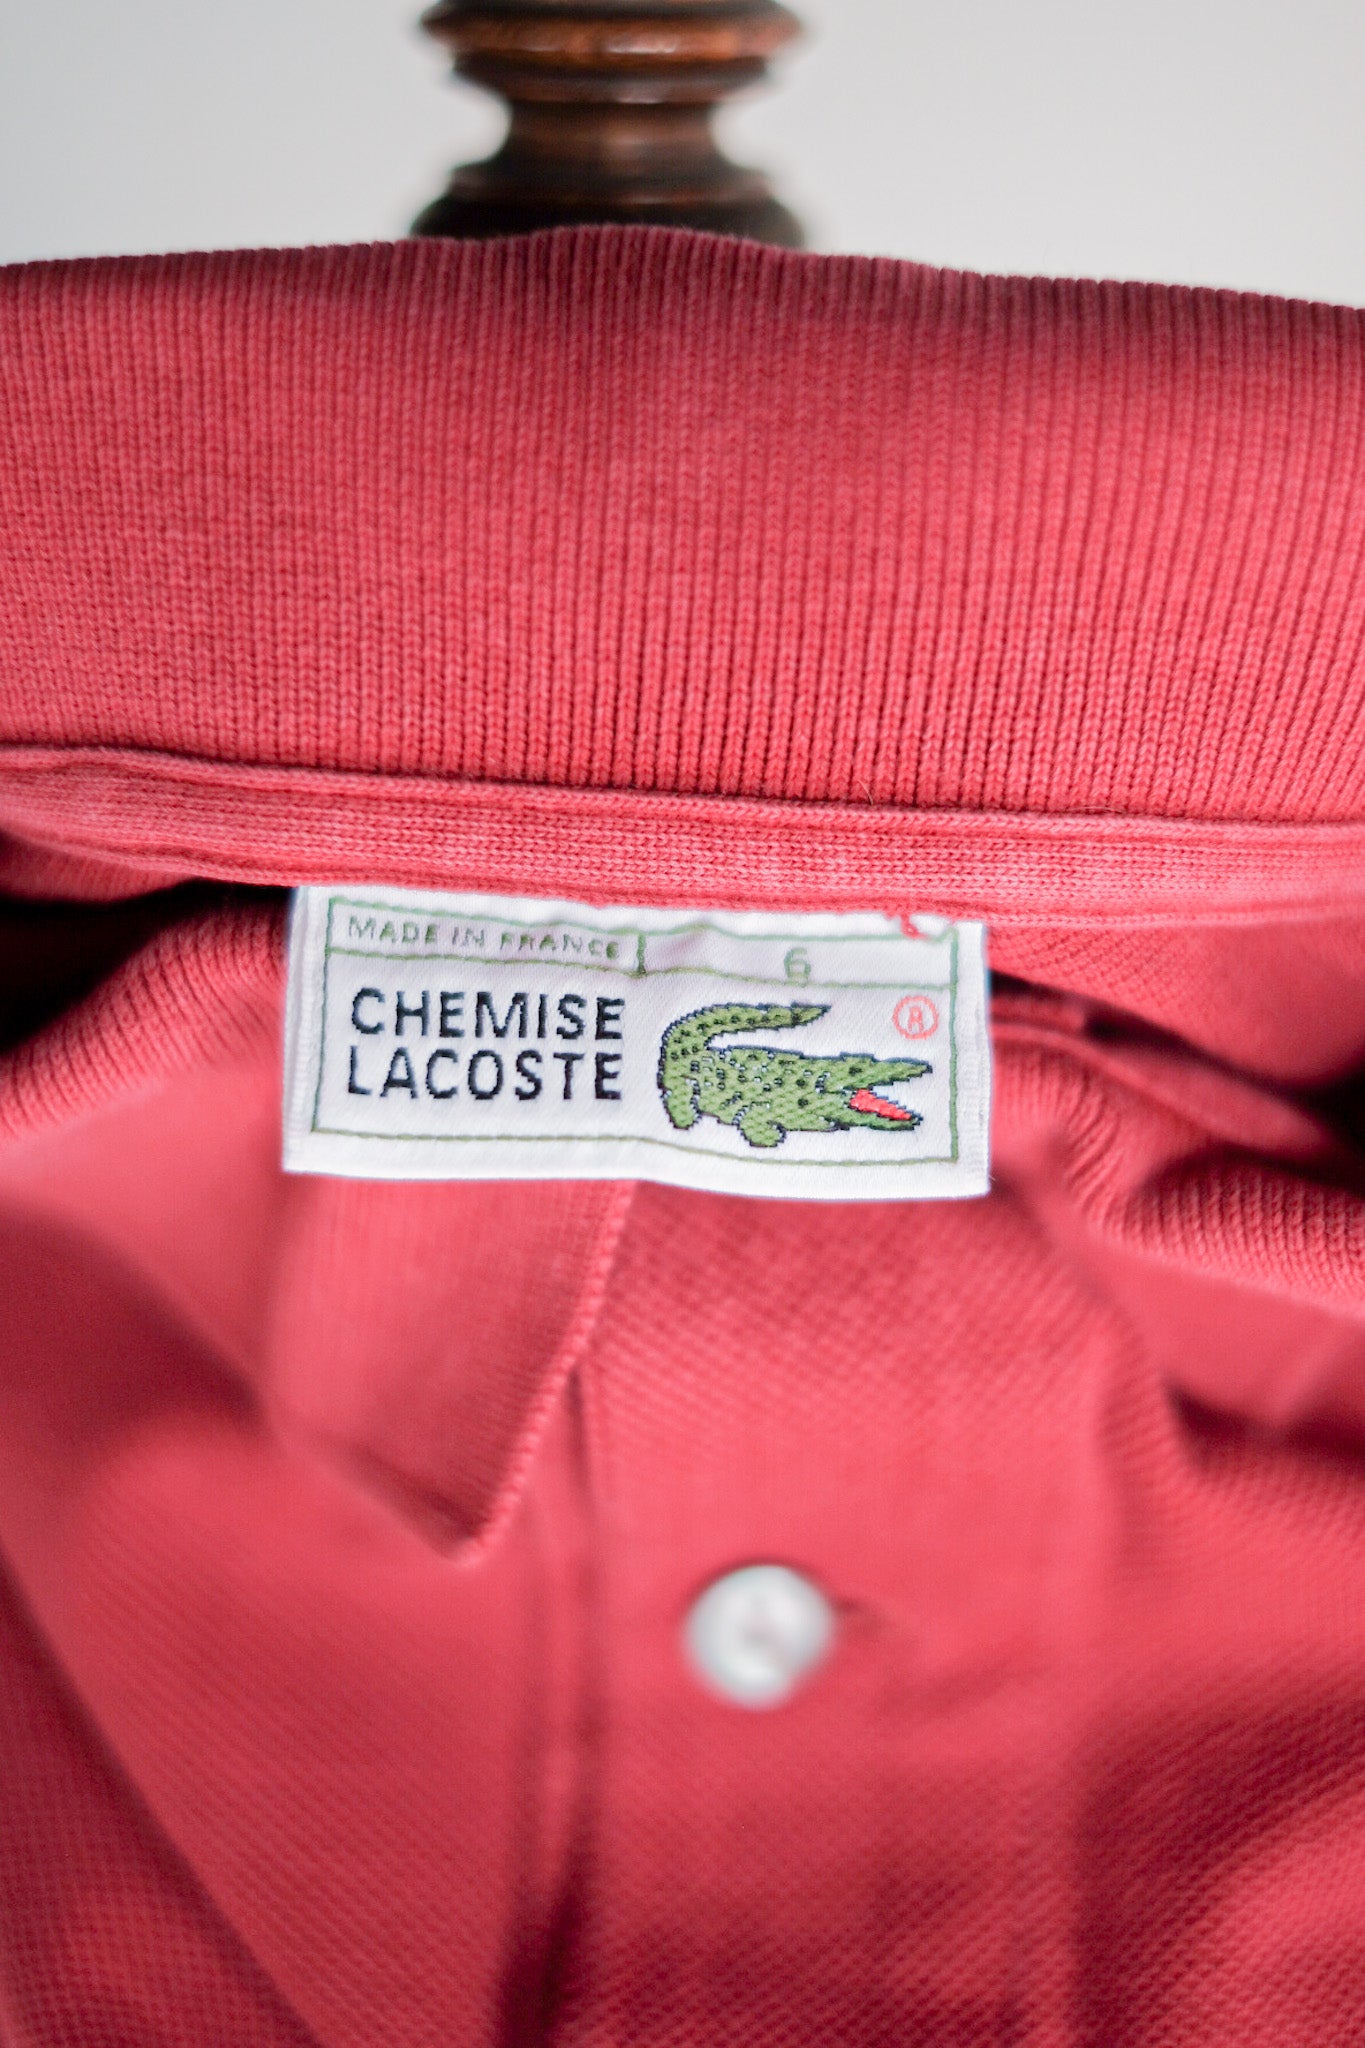 [~ 80 년대] Chemise lacoste l/s 폴로 셔츠 크기 .6 "Burgundy"